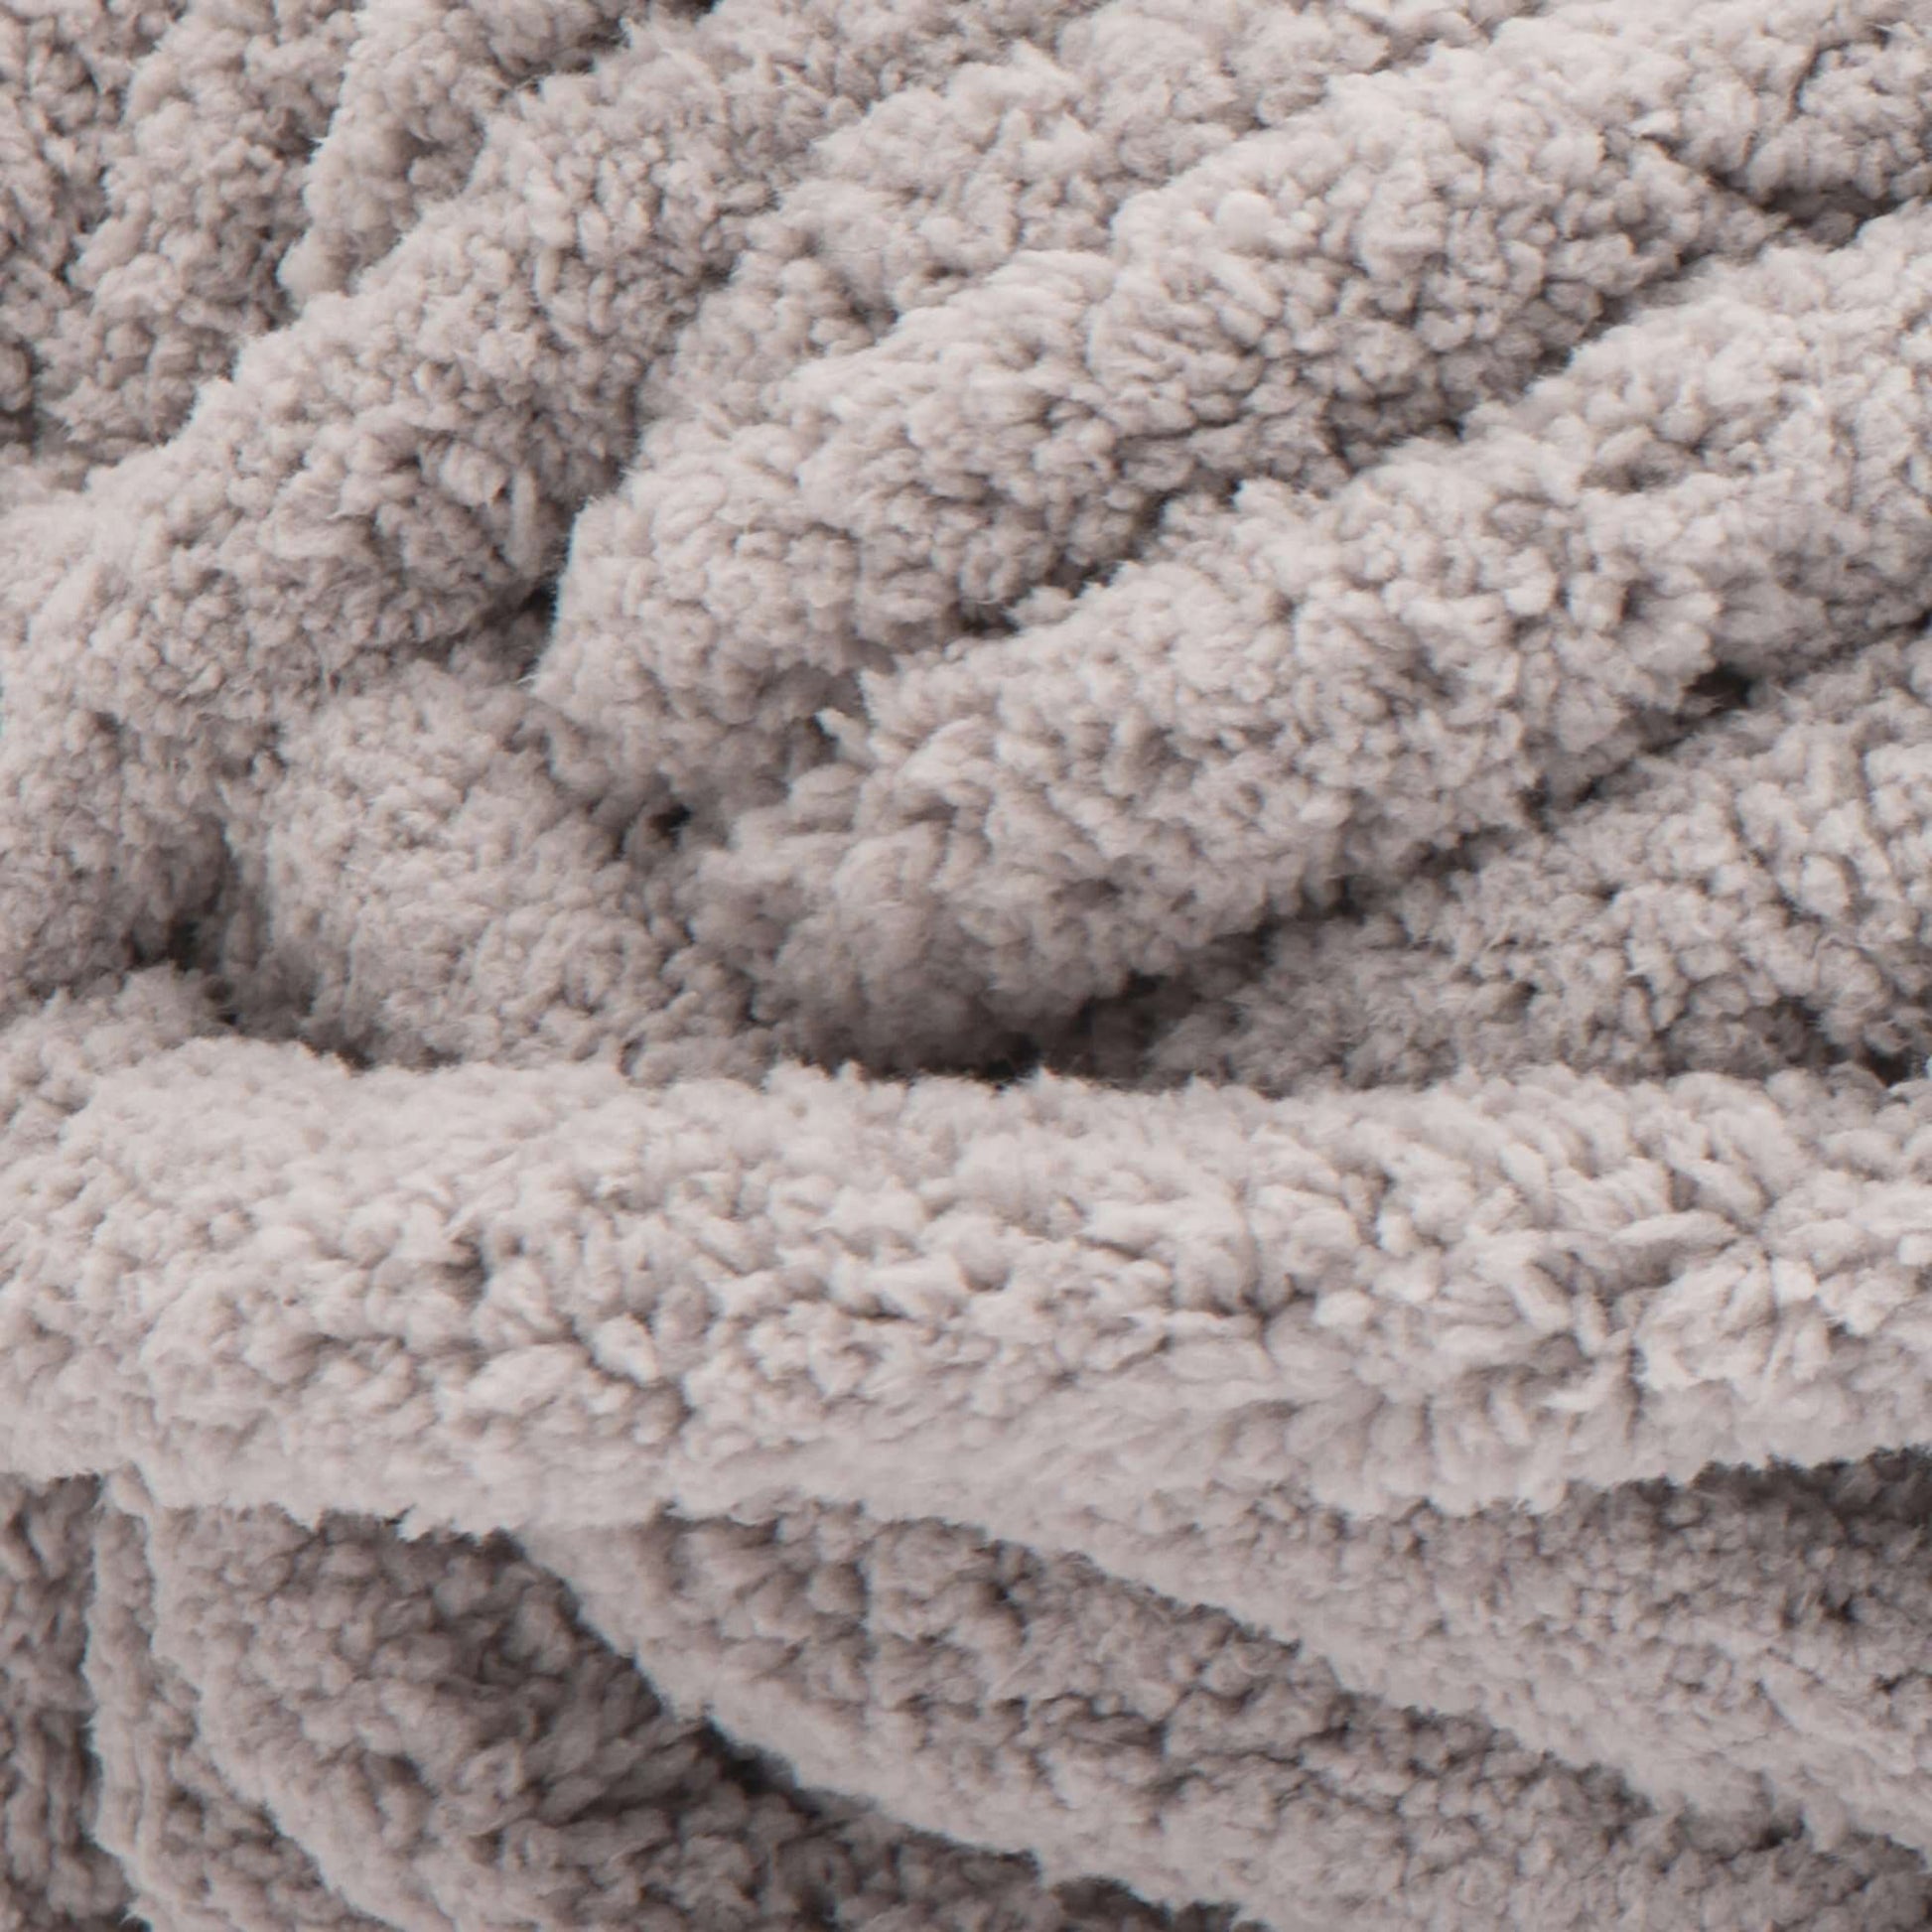 Bernat Blanket Big Yarn (300g/10.5oz) Mushroom